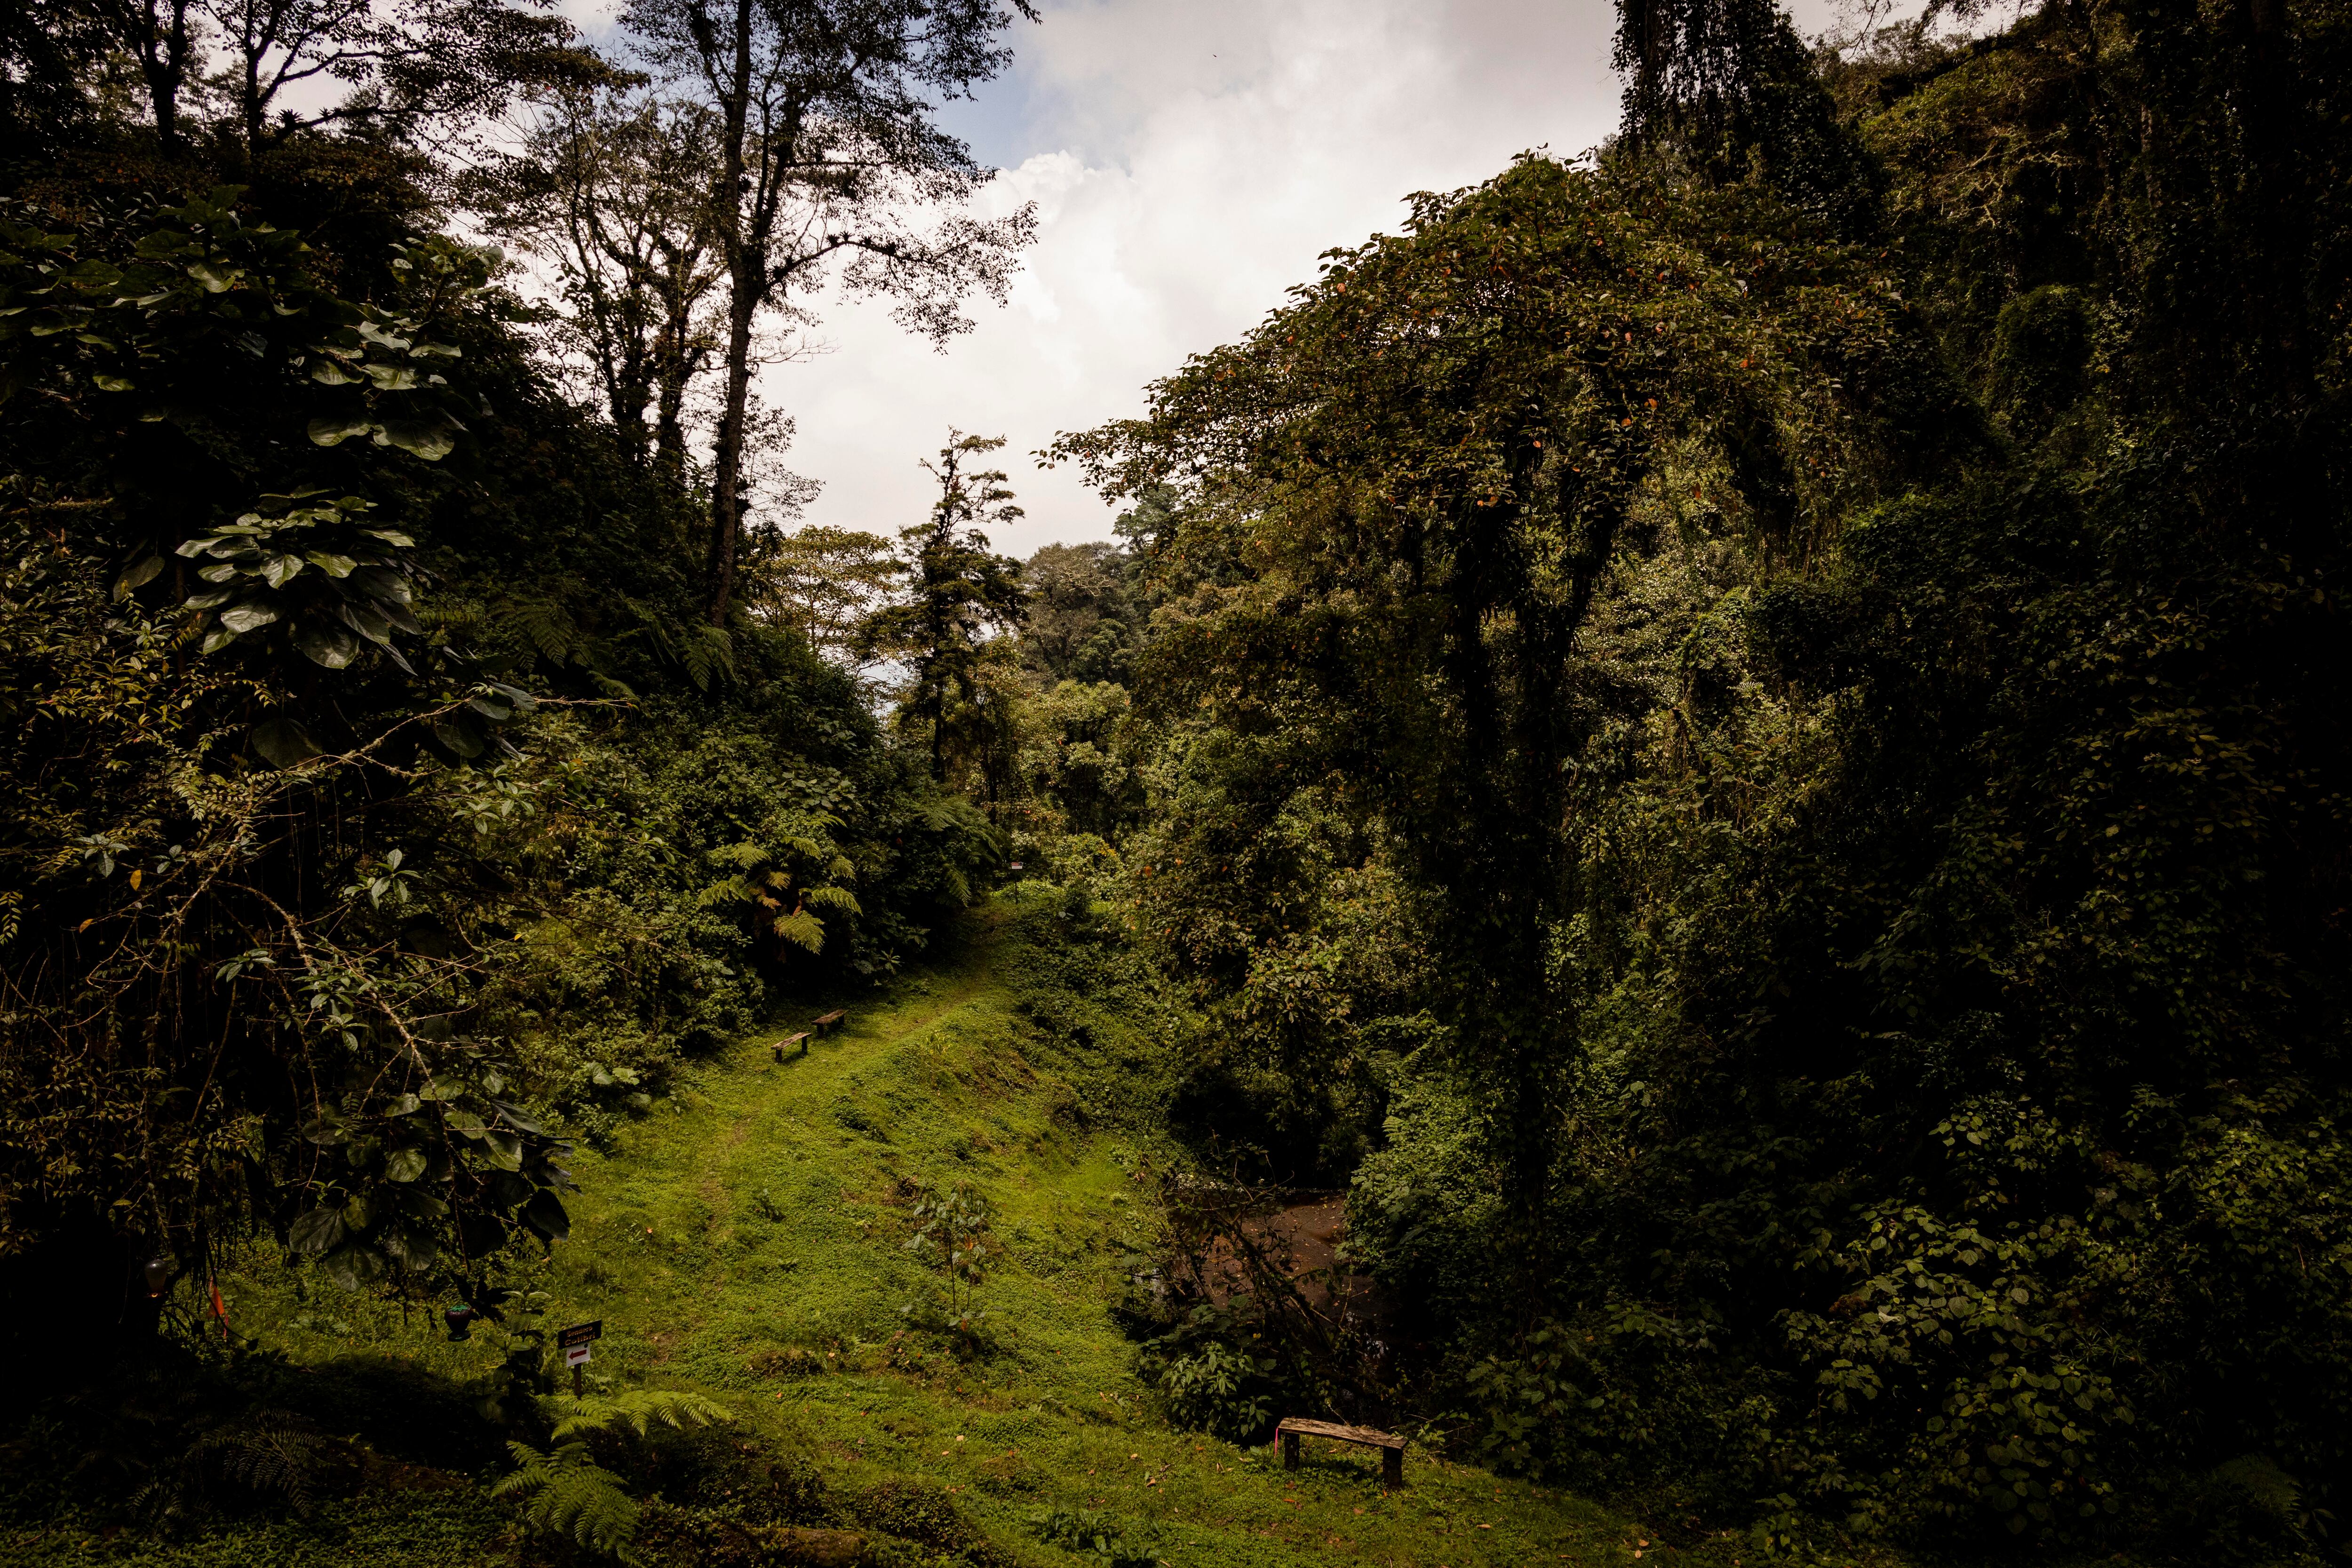  El Iral Bosque Nuboso se ubica en Cascajal de Coronado. (Foto: Alonso Tenorio)